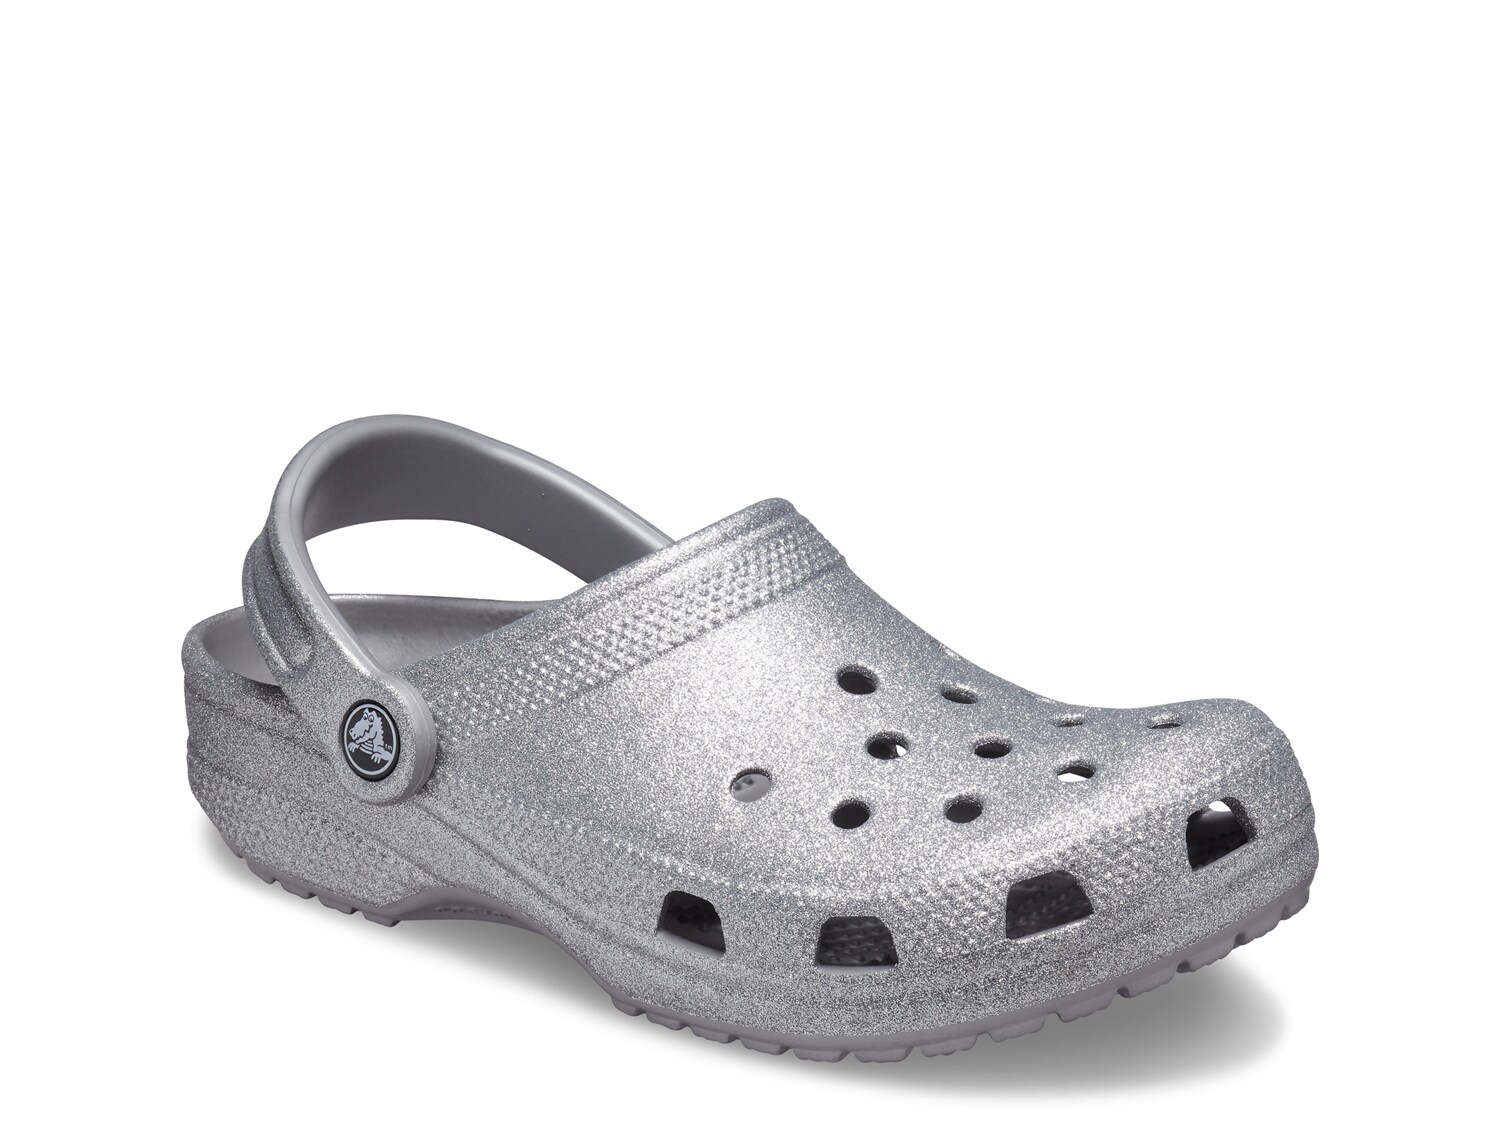 crocs shoes wide widths